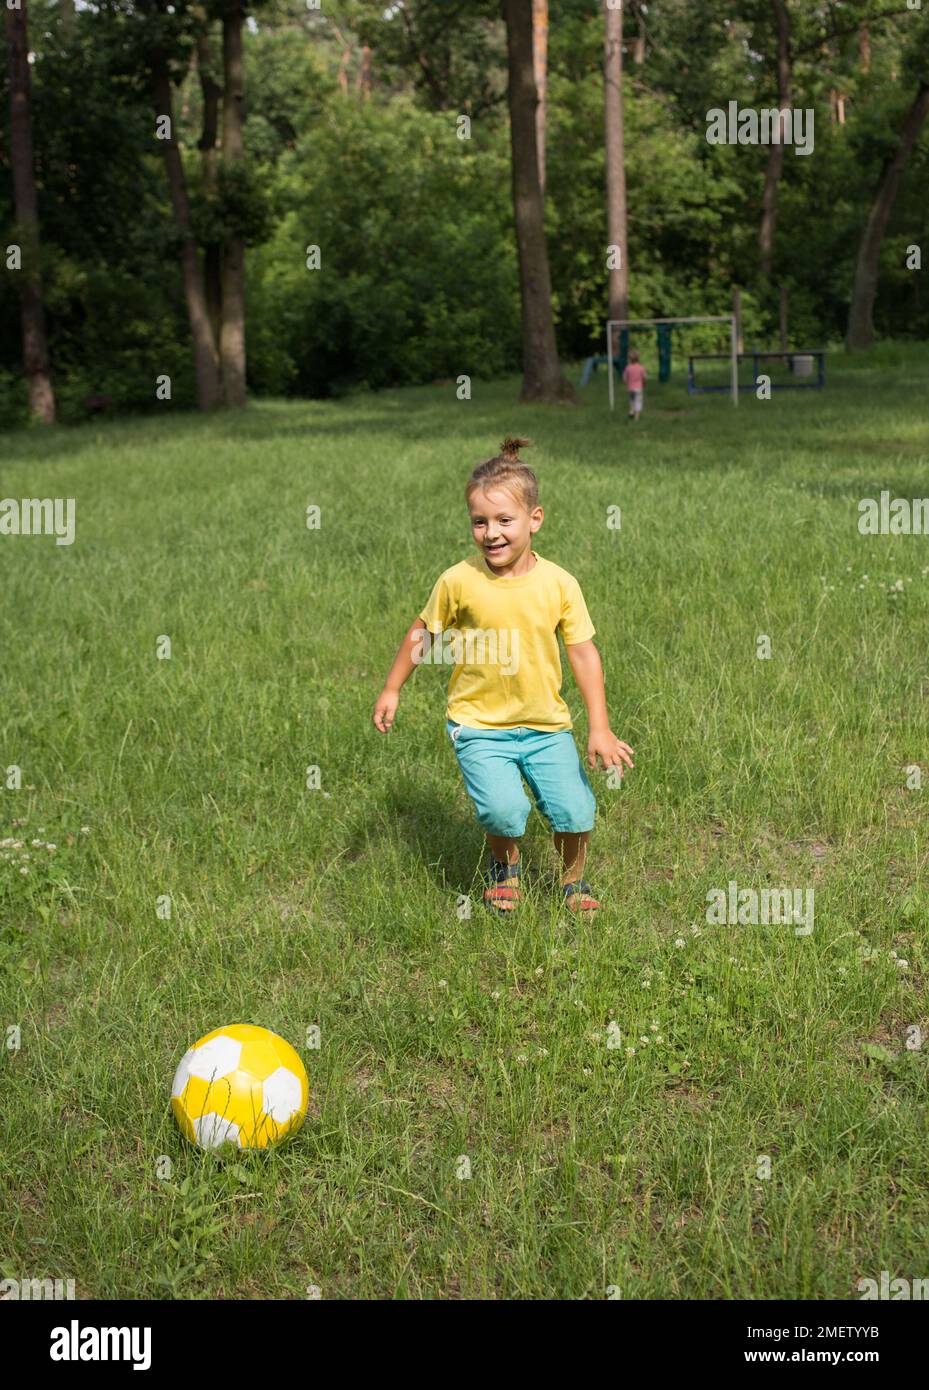 ragazzo di 5-6 anni corre nel parco su erba verde e calcia una palla di calcio gialla. Stile di vita attivo, attività divertenti per i bambini nell'outdo estivo Foto Stock